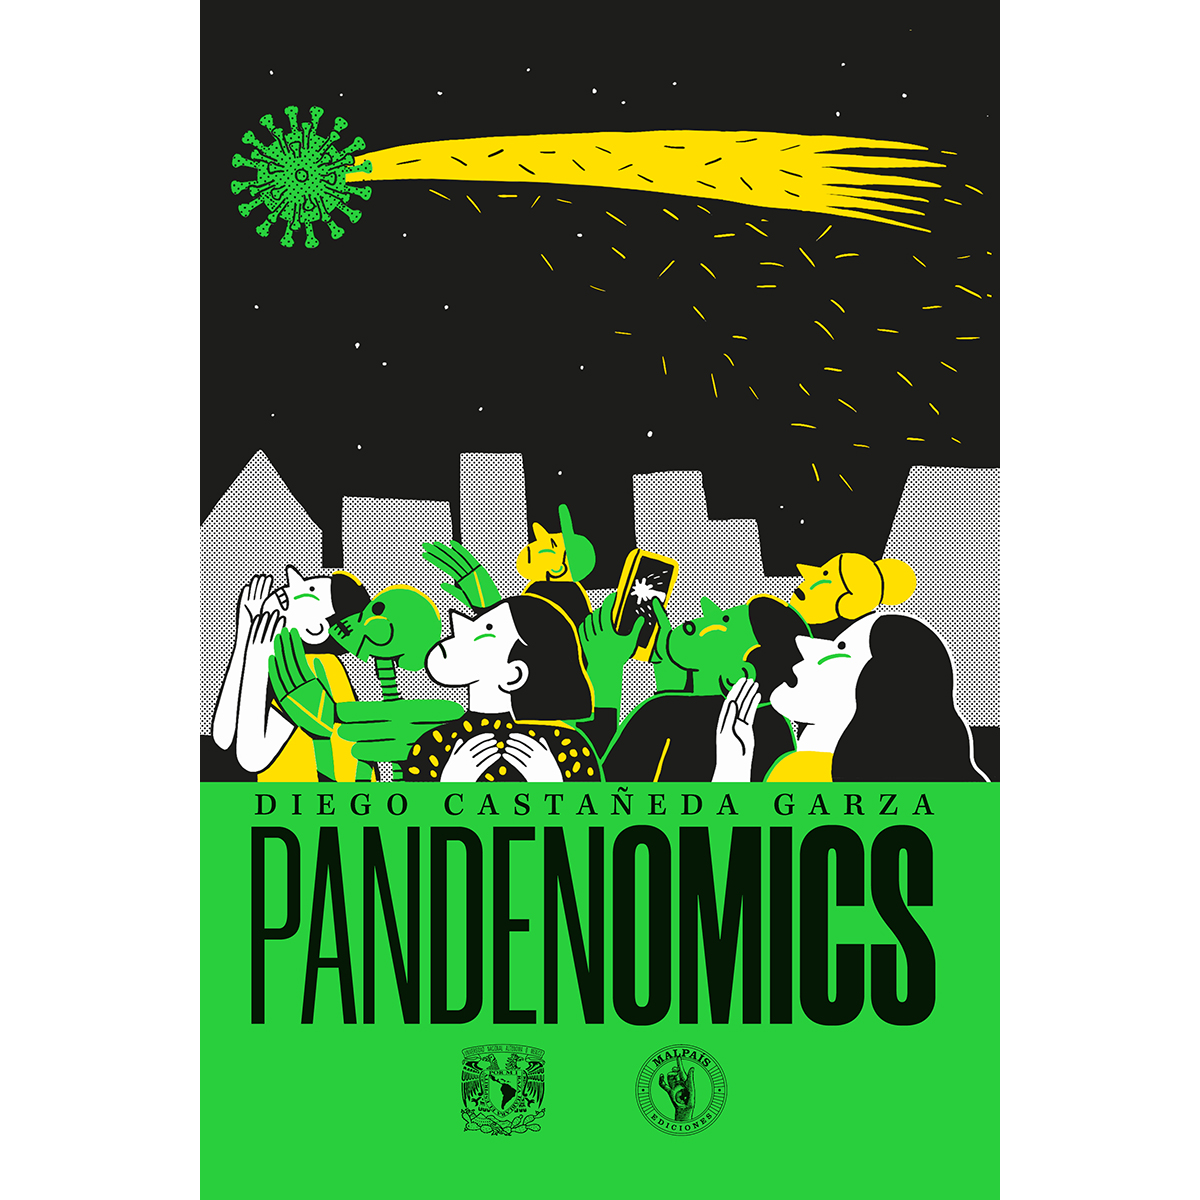 PANDENOMICS: UNA INTRODUCCIÓN A LA HISTORIA ECONÓMICA DE LAS GRANDES PANDEMIAS.